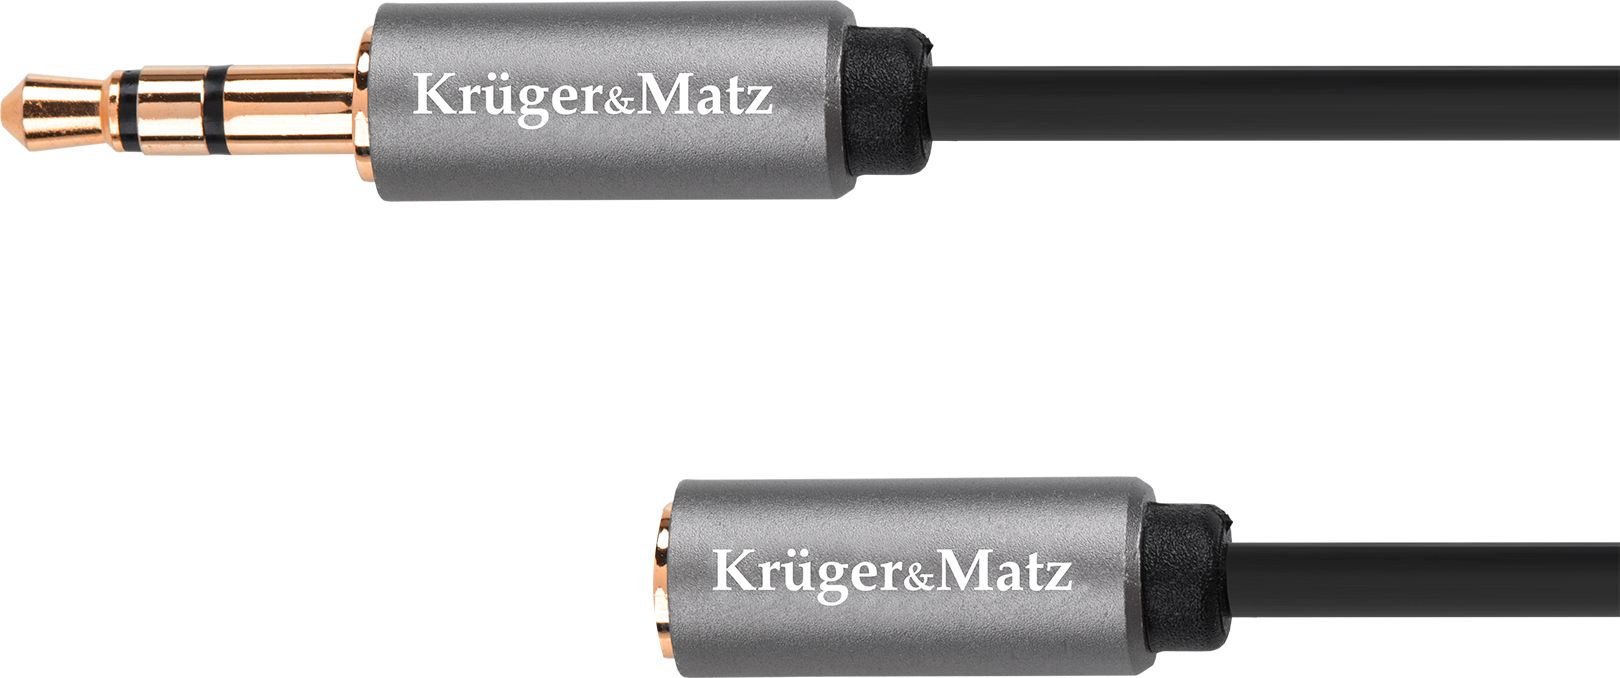 Cablu prelungitor Kruger & Matz jack 3.5 mm tata - jack mama, 1 m lungime, gri cu negru